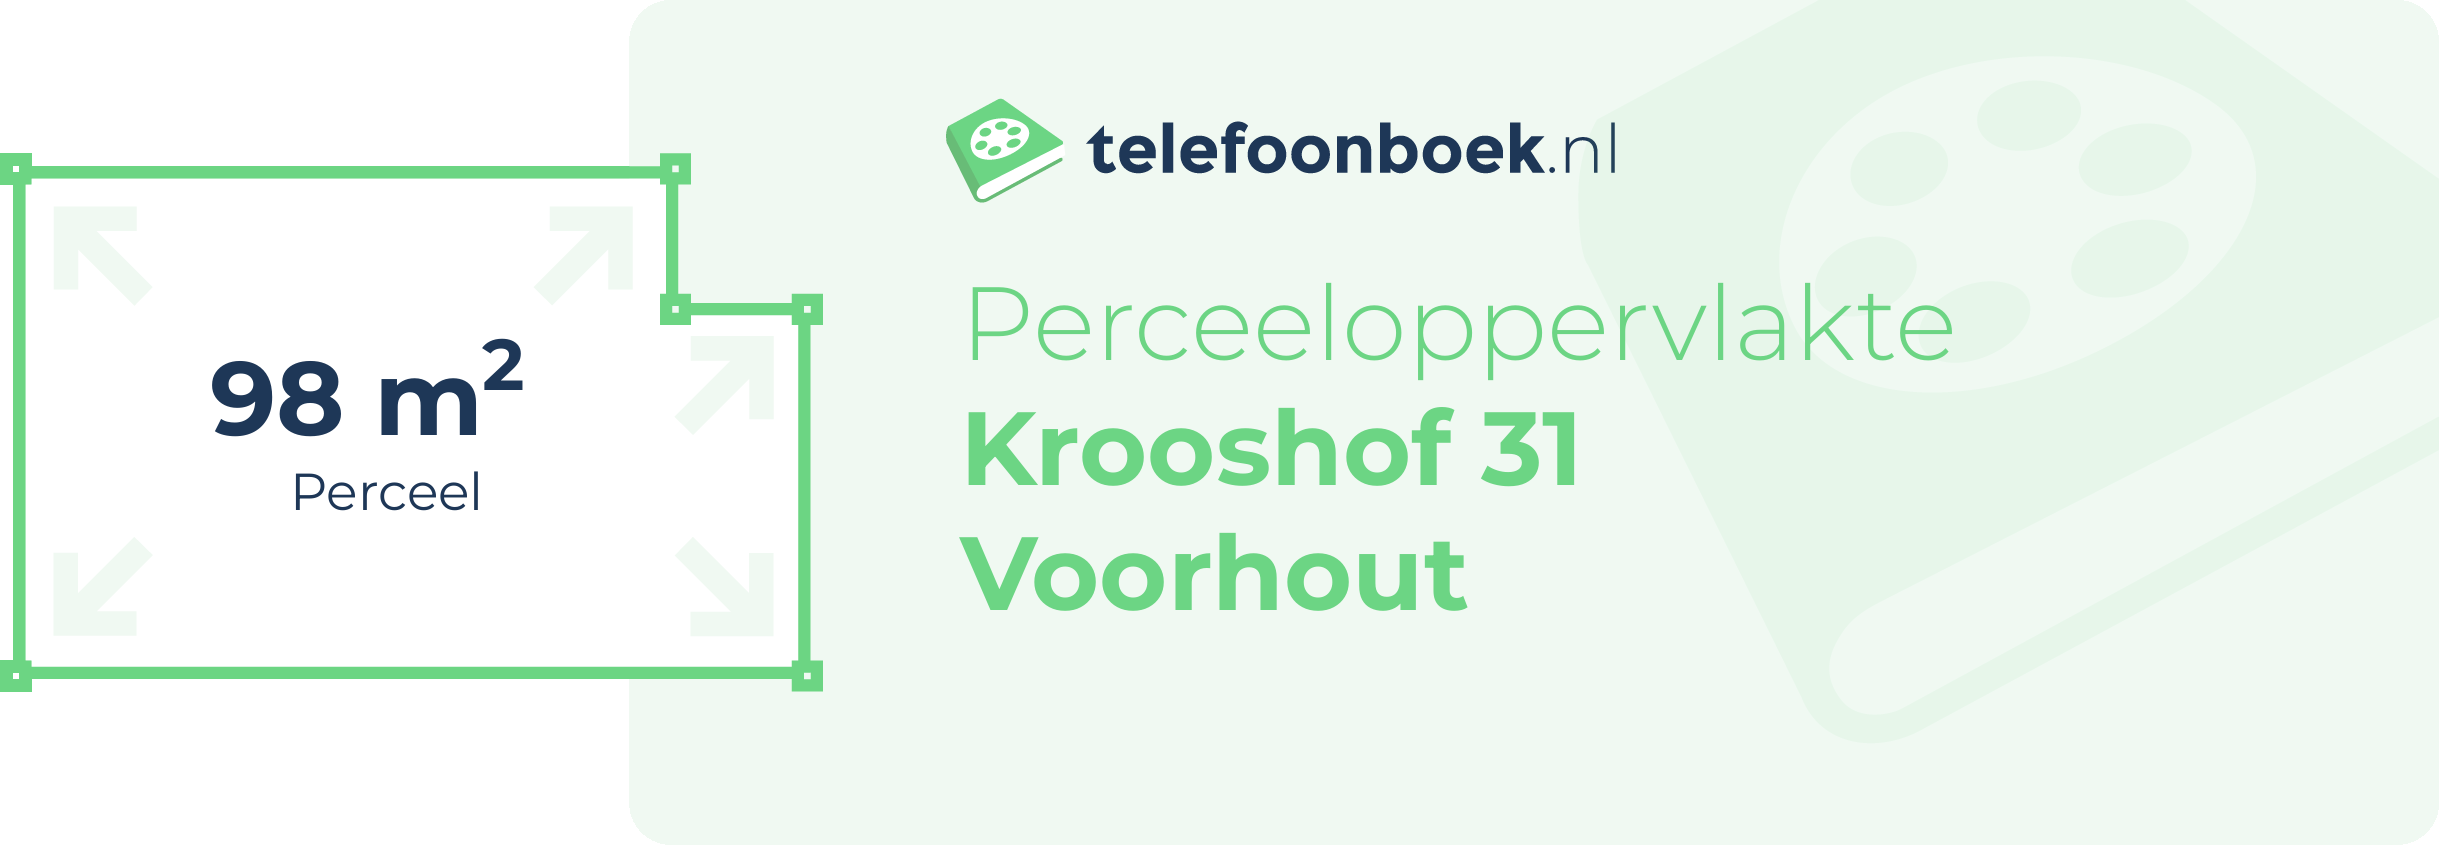 Perceeloppervlakte Krooshof 31 Voorhout